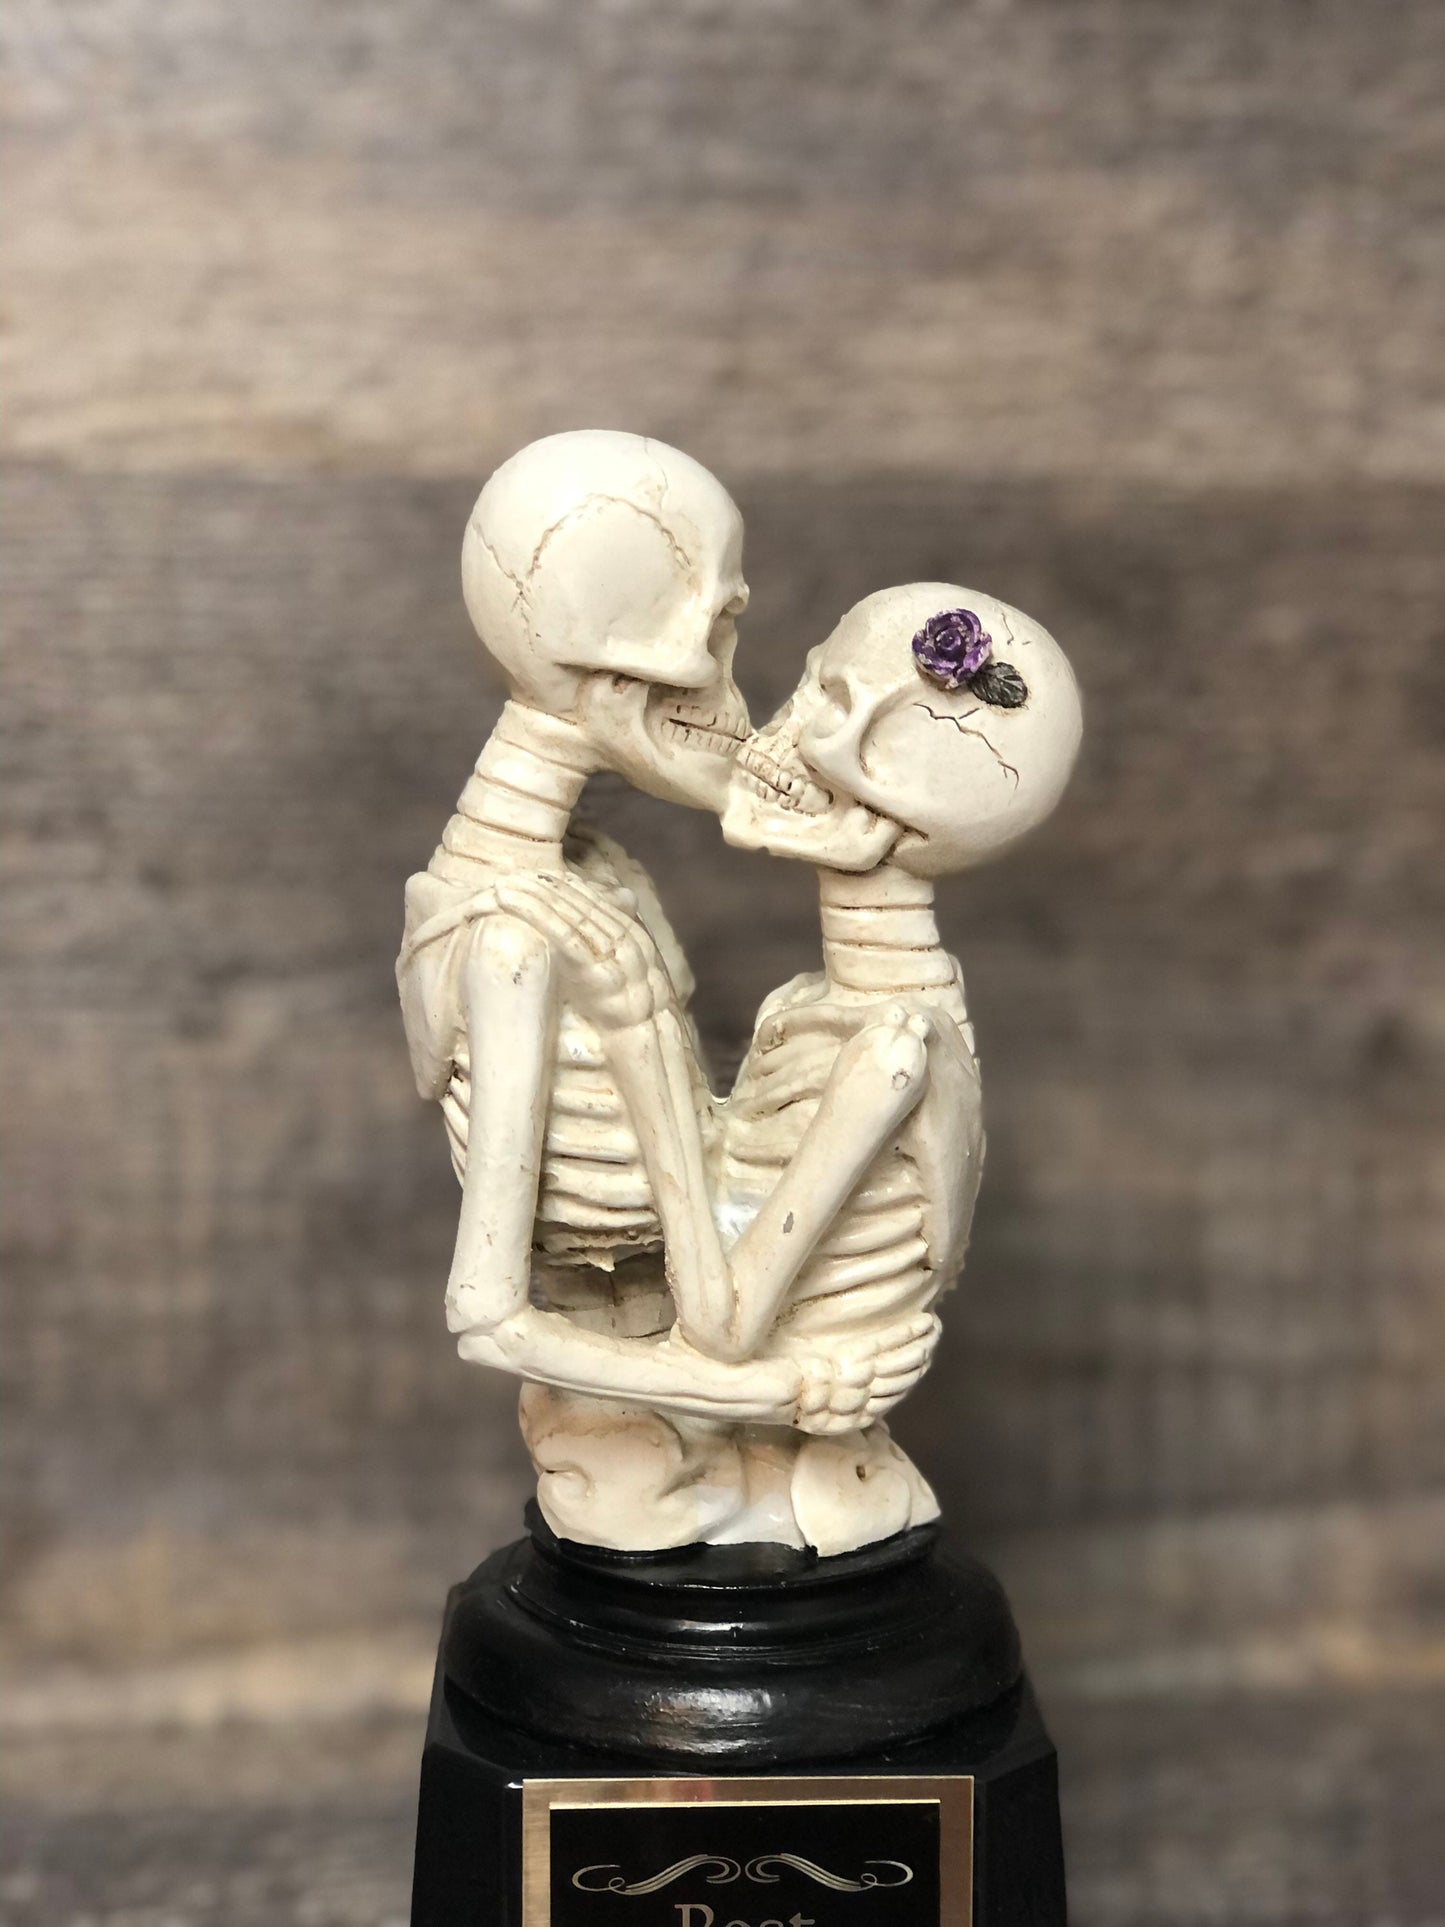 Halloween Trophy Couple Costume Contest Winner Skeleton Casket Trophy Dia De Los Muertos Winner Couples Trophies Halloween Decor Skull